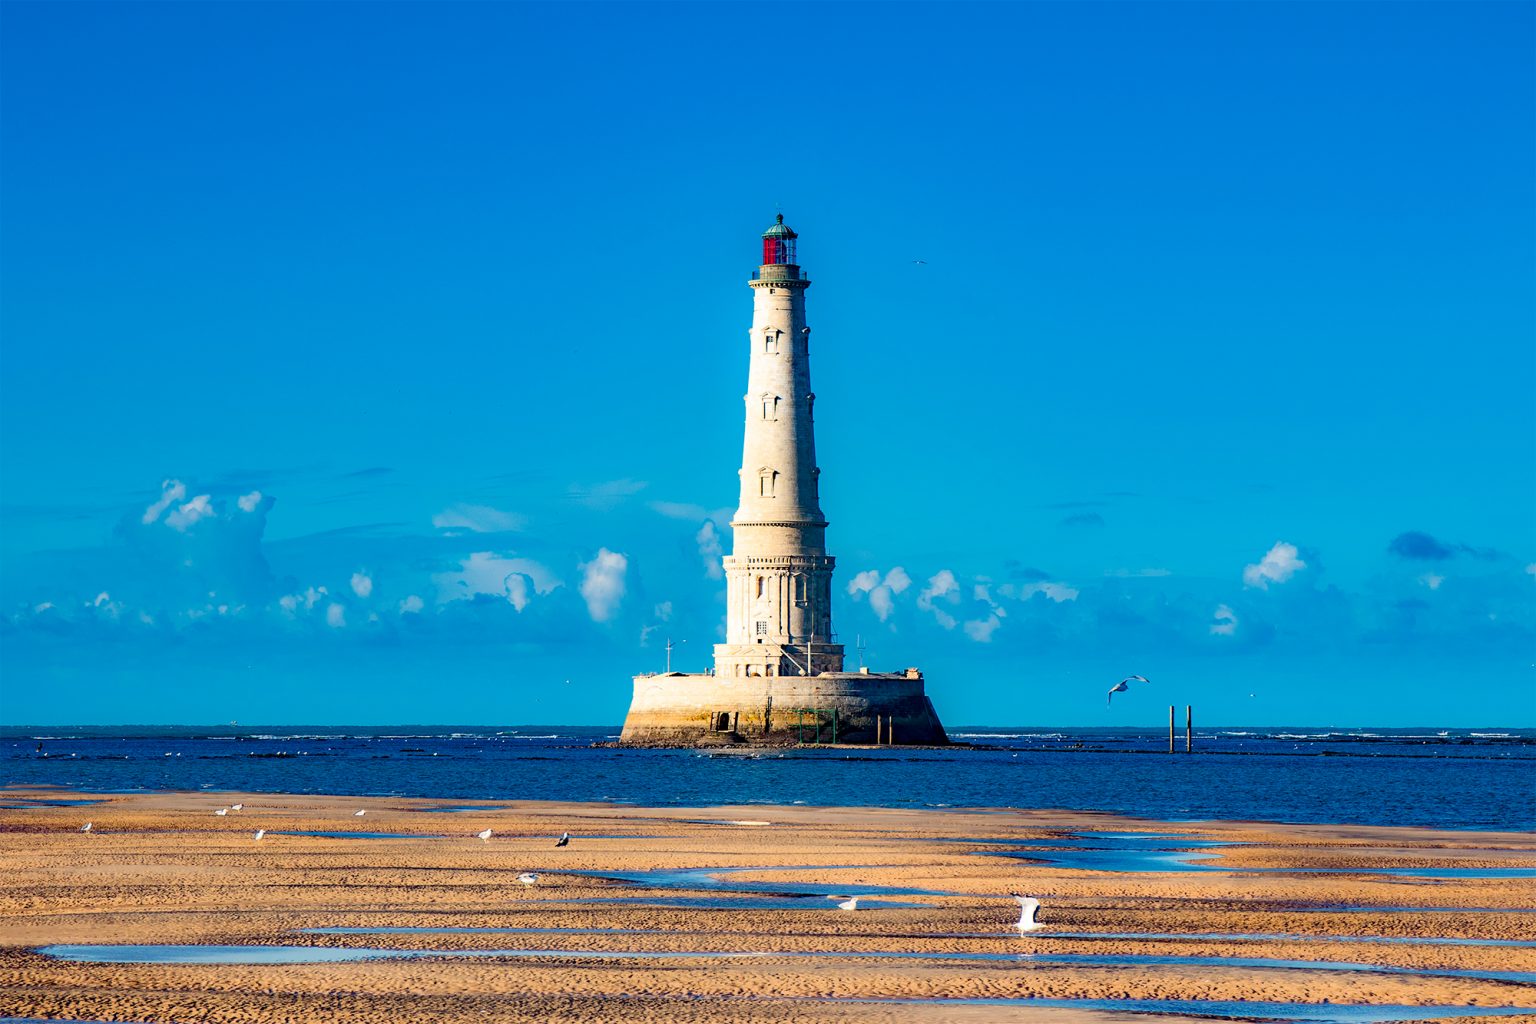 Le phare de Cordouan inscrit au patrimoine mondial de l'Unesco en 2021 (©Nouvelle Aquitaine Tourisme)